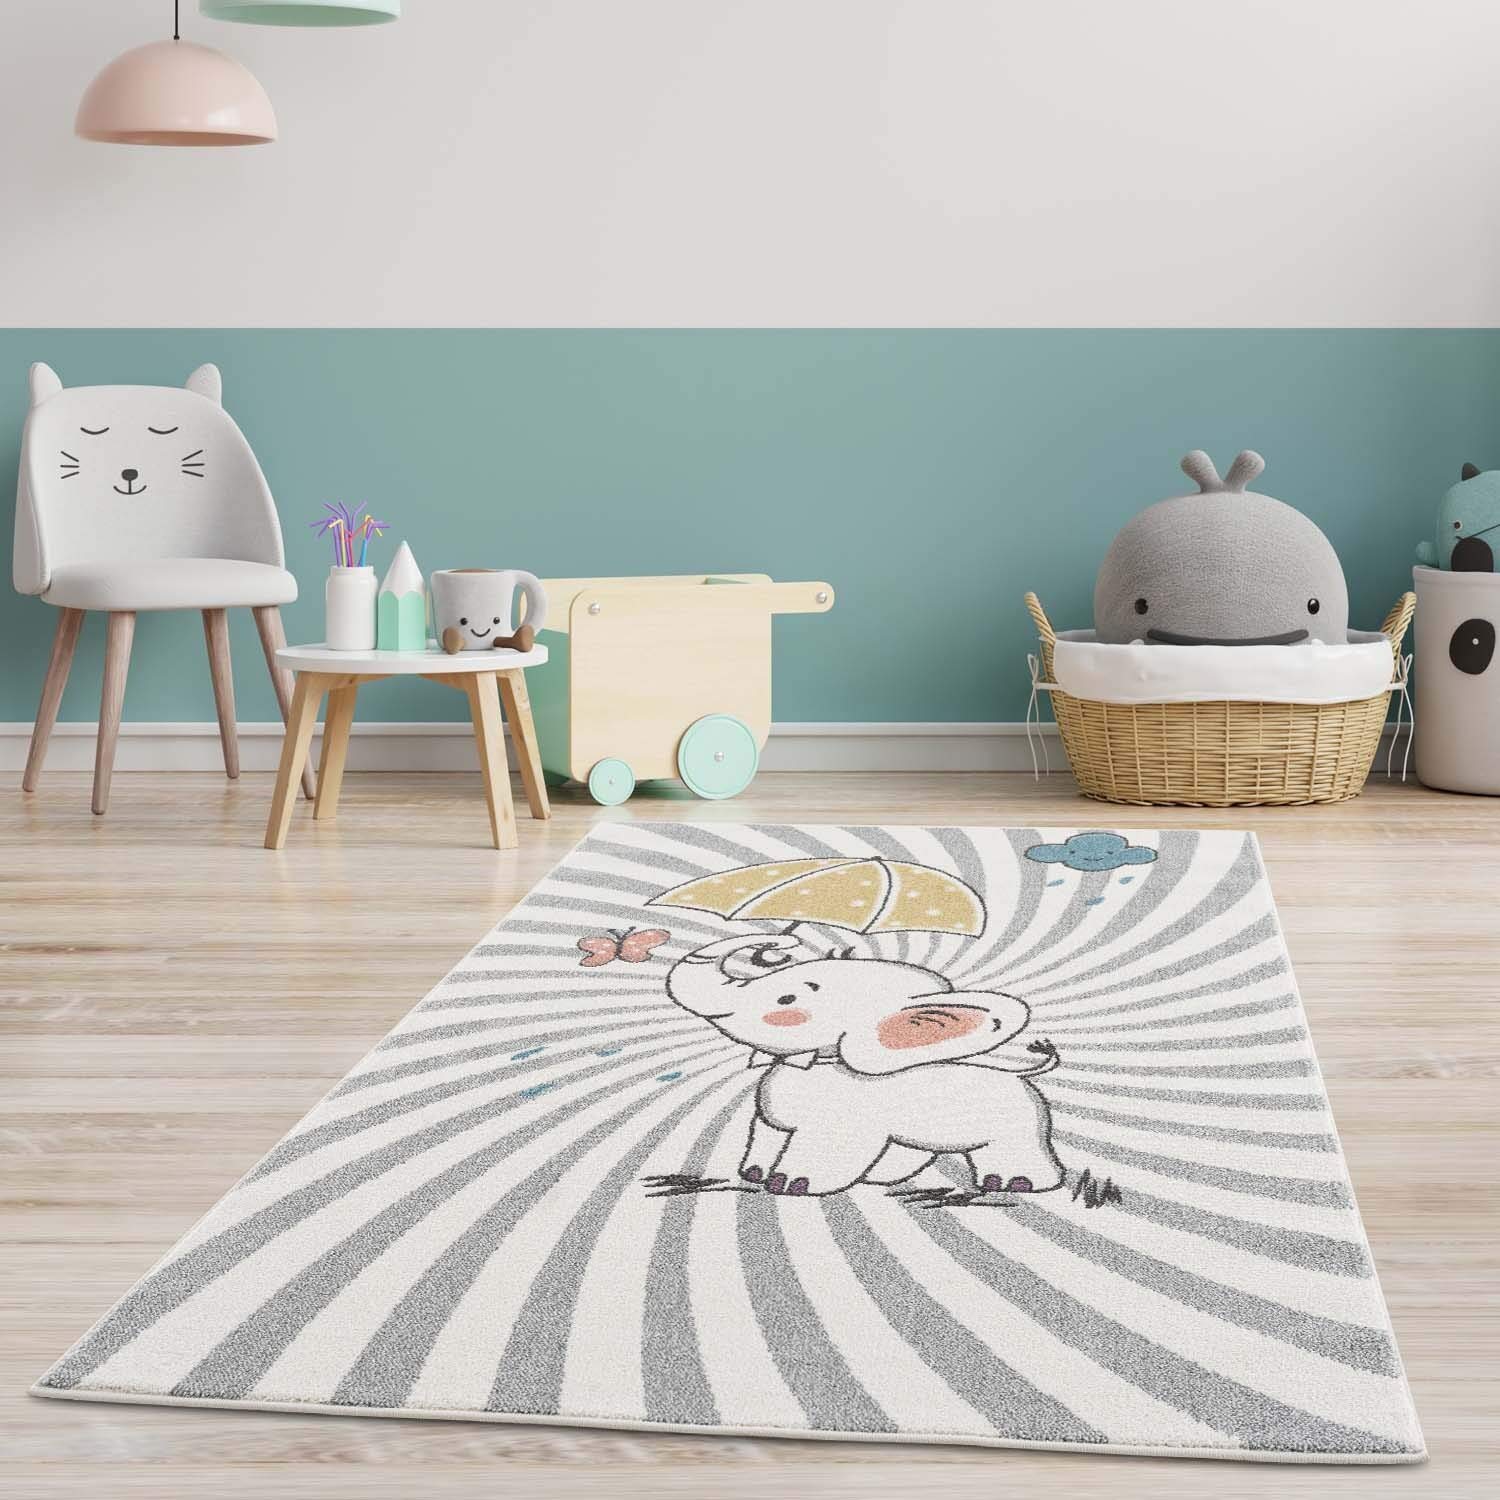 Kinderteppich - Tier-Motiv Baby-Elefant 140x200 cm Creme Multi - Kinderzimmer Teppich Modern